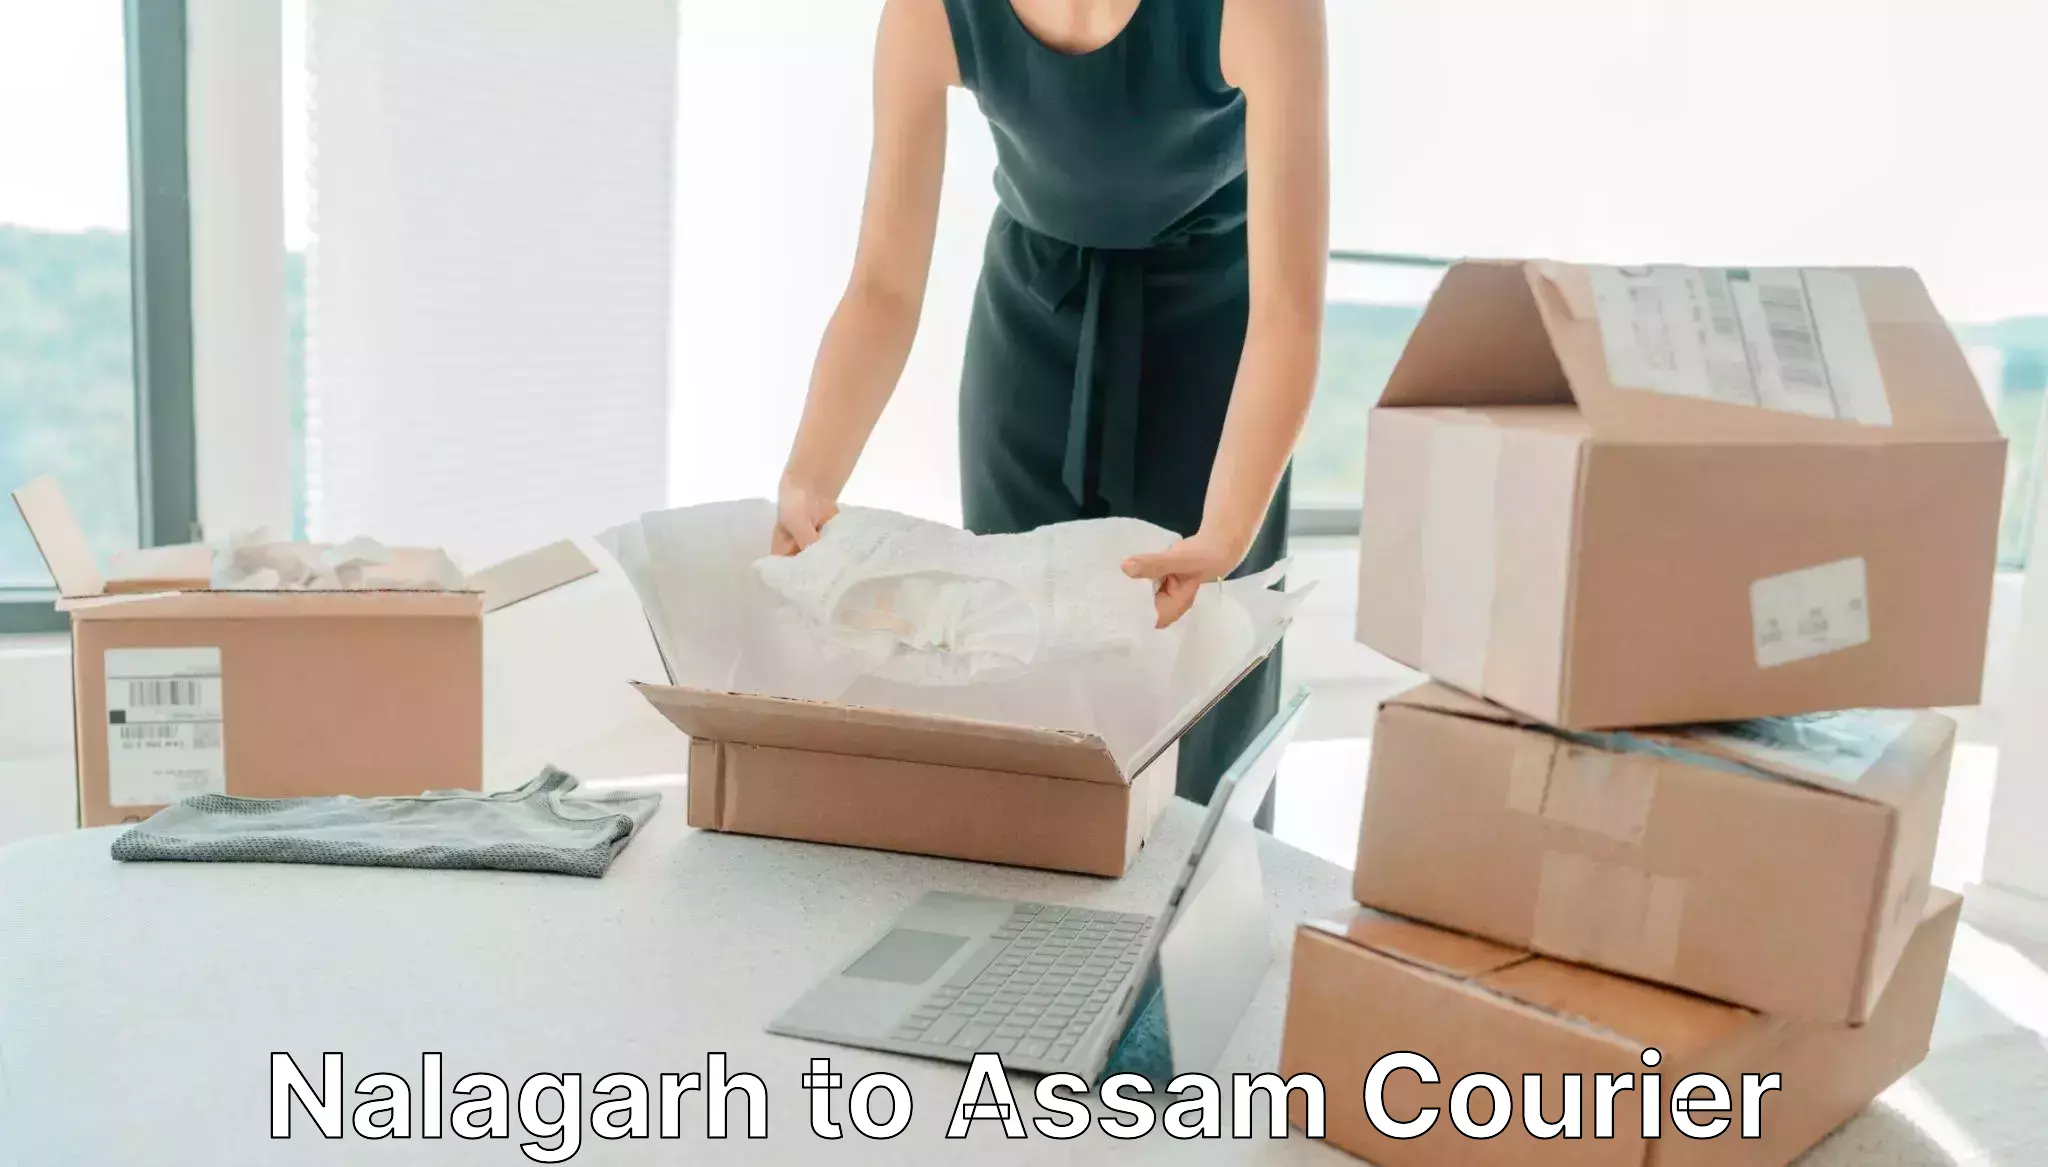 Modern courier technology Nalagarh to Assam